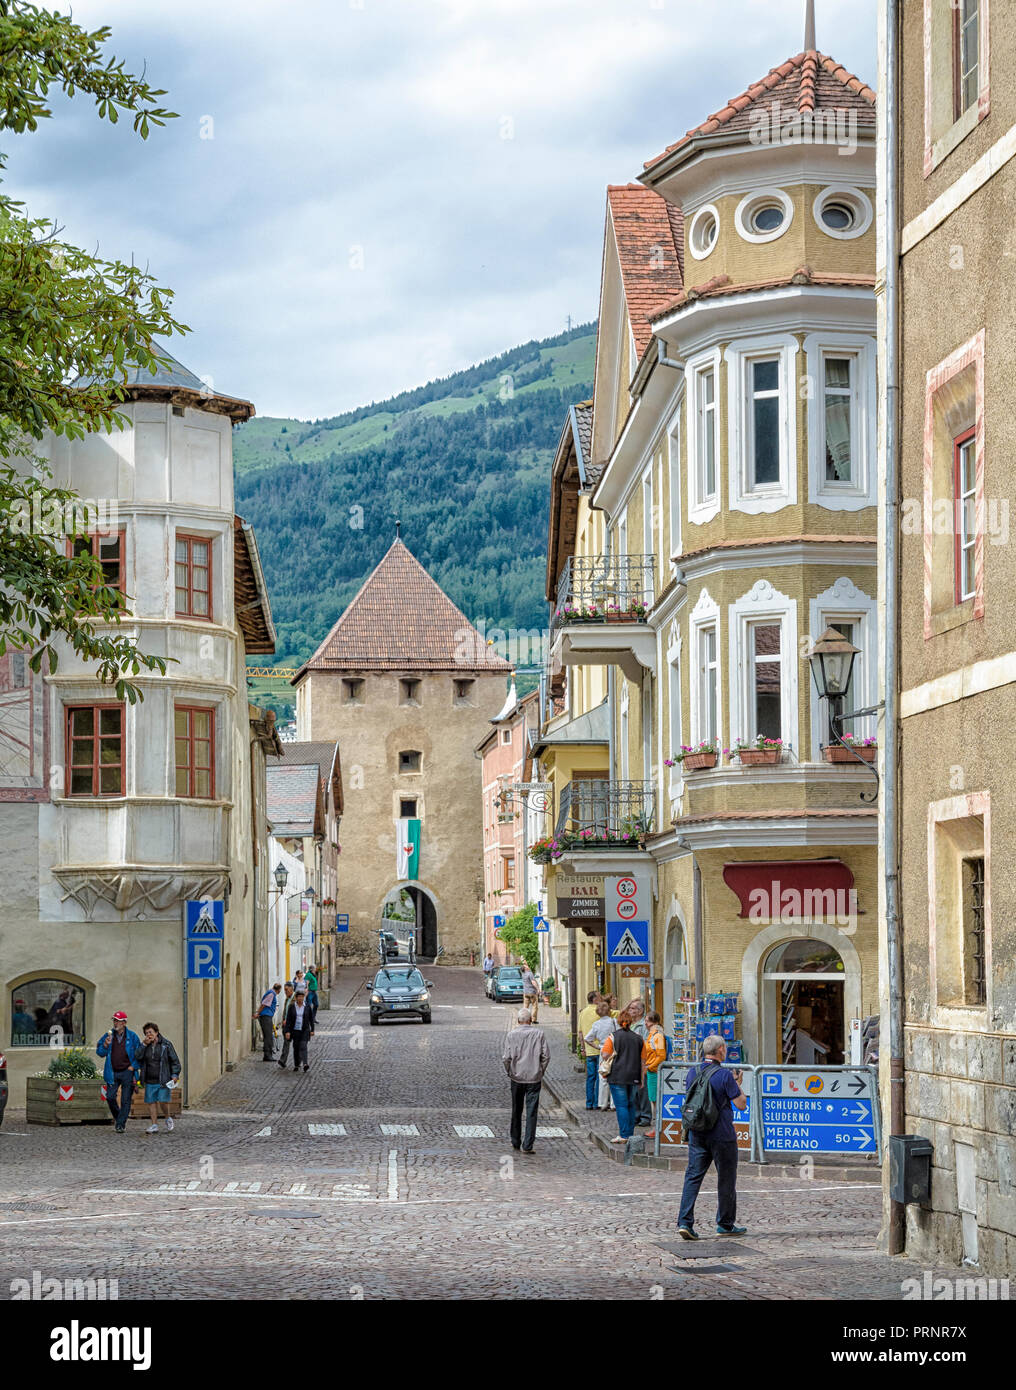 La storica città di Glorenza/Glorenza nel sud di Malles/Malles è una delle più piccole città in tutto il mondo. Trentino Alto Adige - Italia Foto Stock